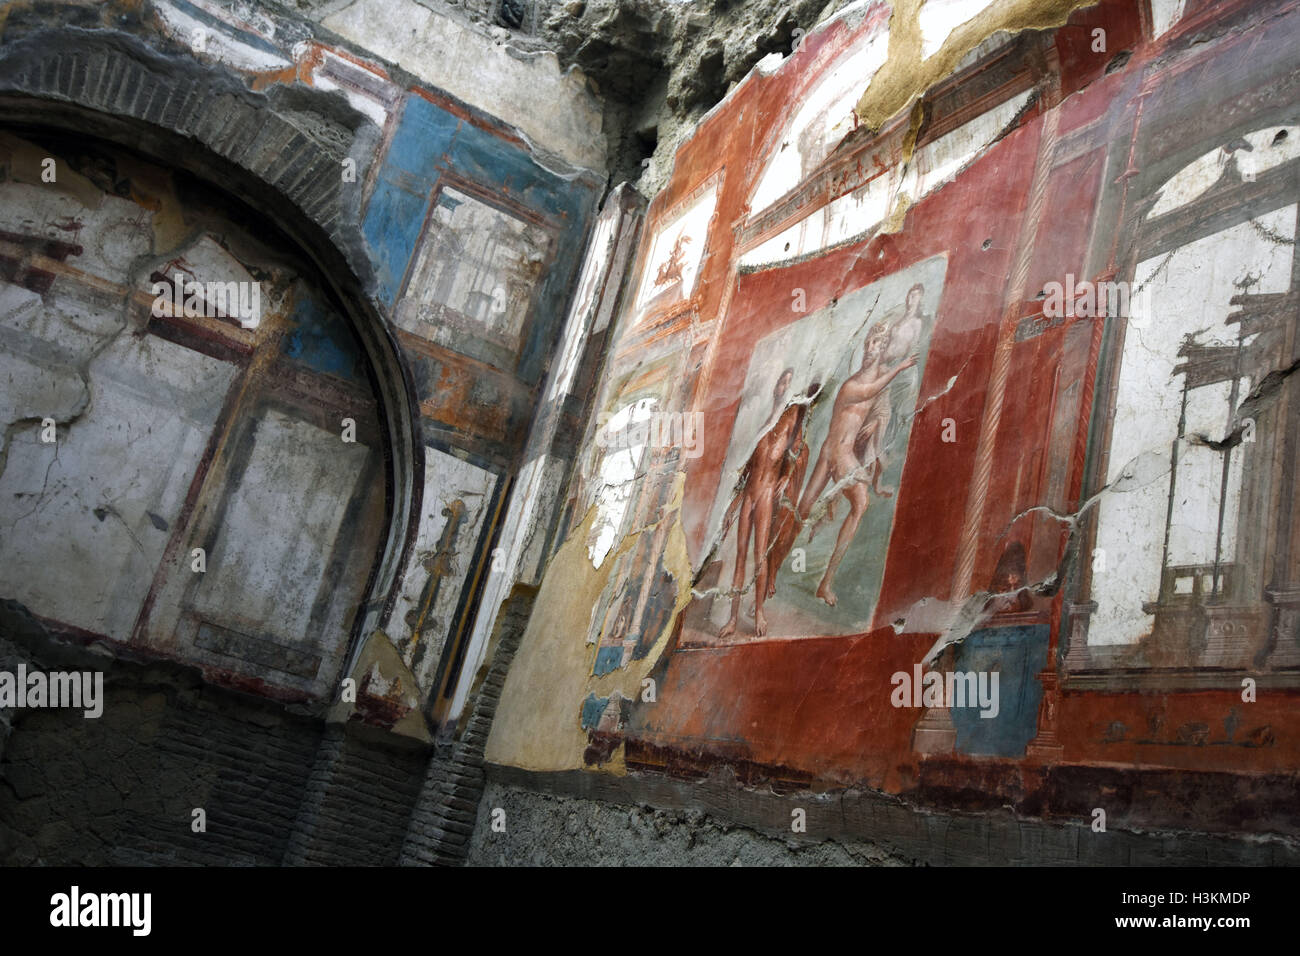 Les vestiges romains, les organes et les fresques d'Herculanum près de Pompei, Italie Banque D'Images